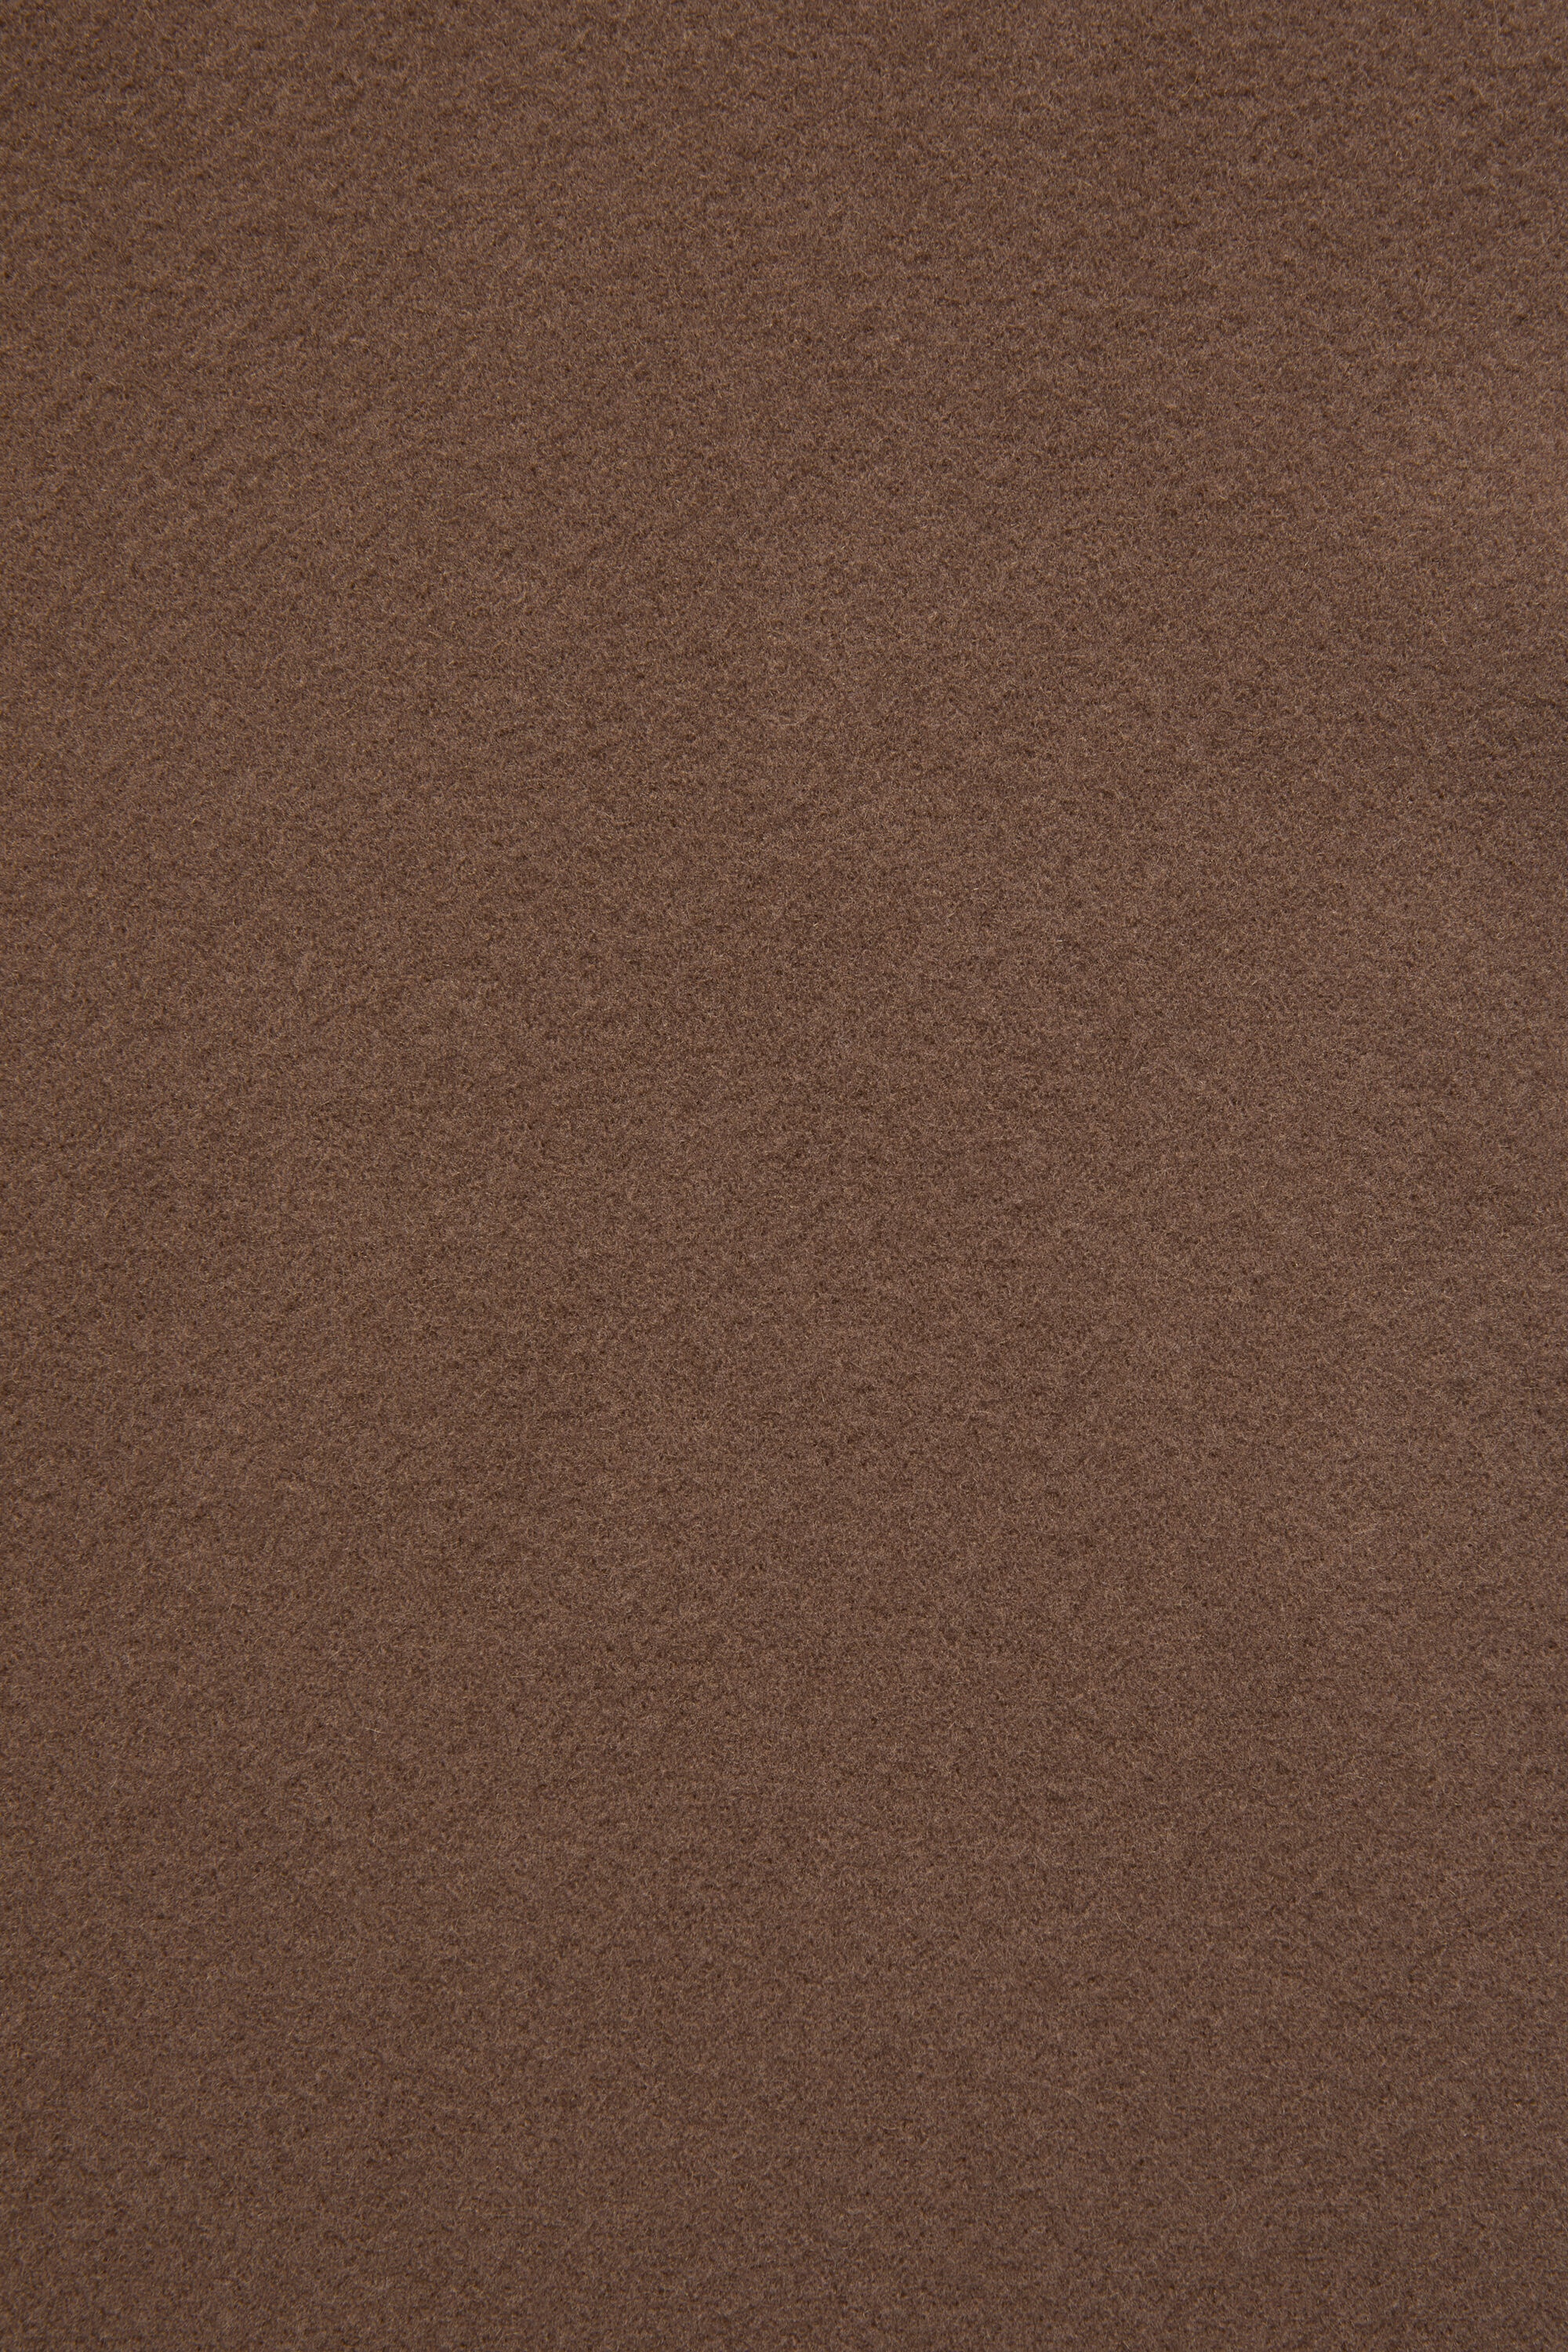 Fringe wool scarf - skinny - Chocolate brown - 5